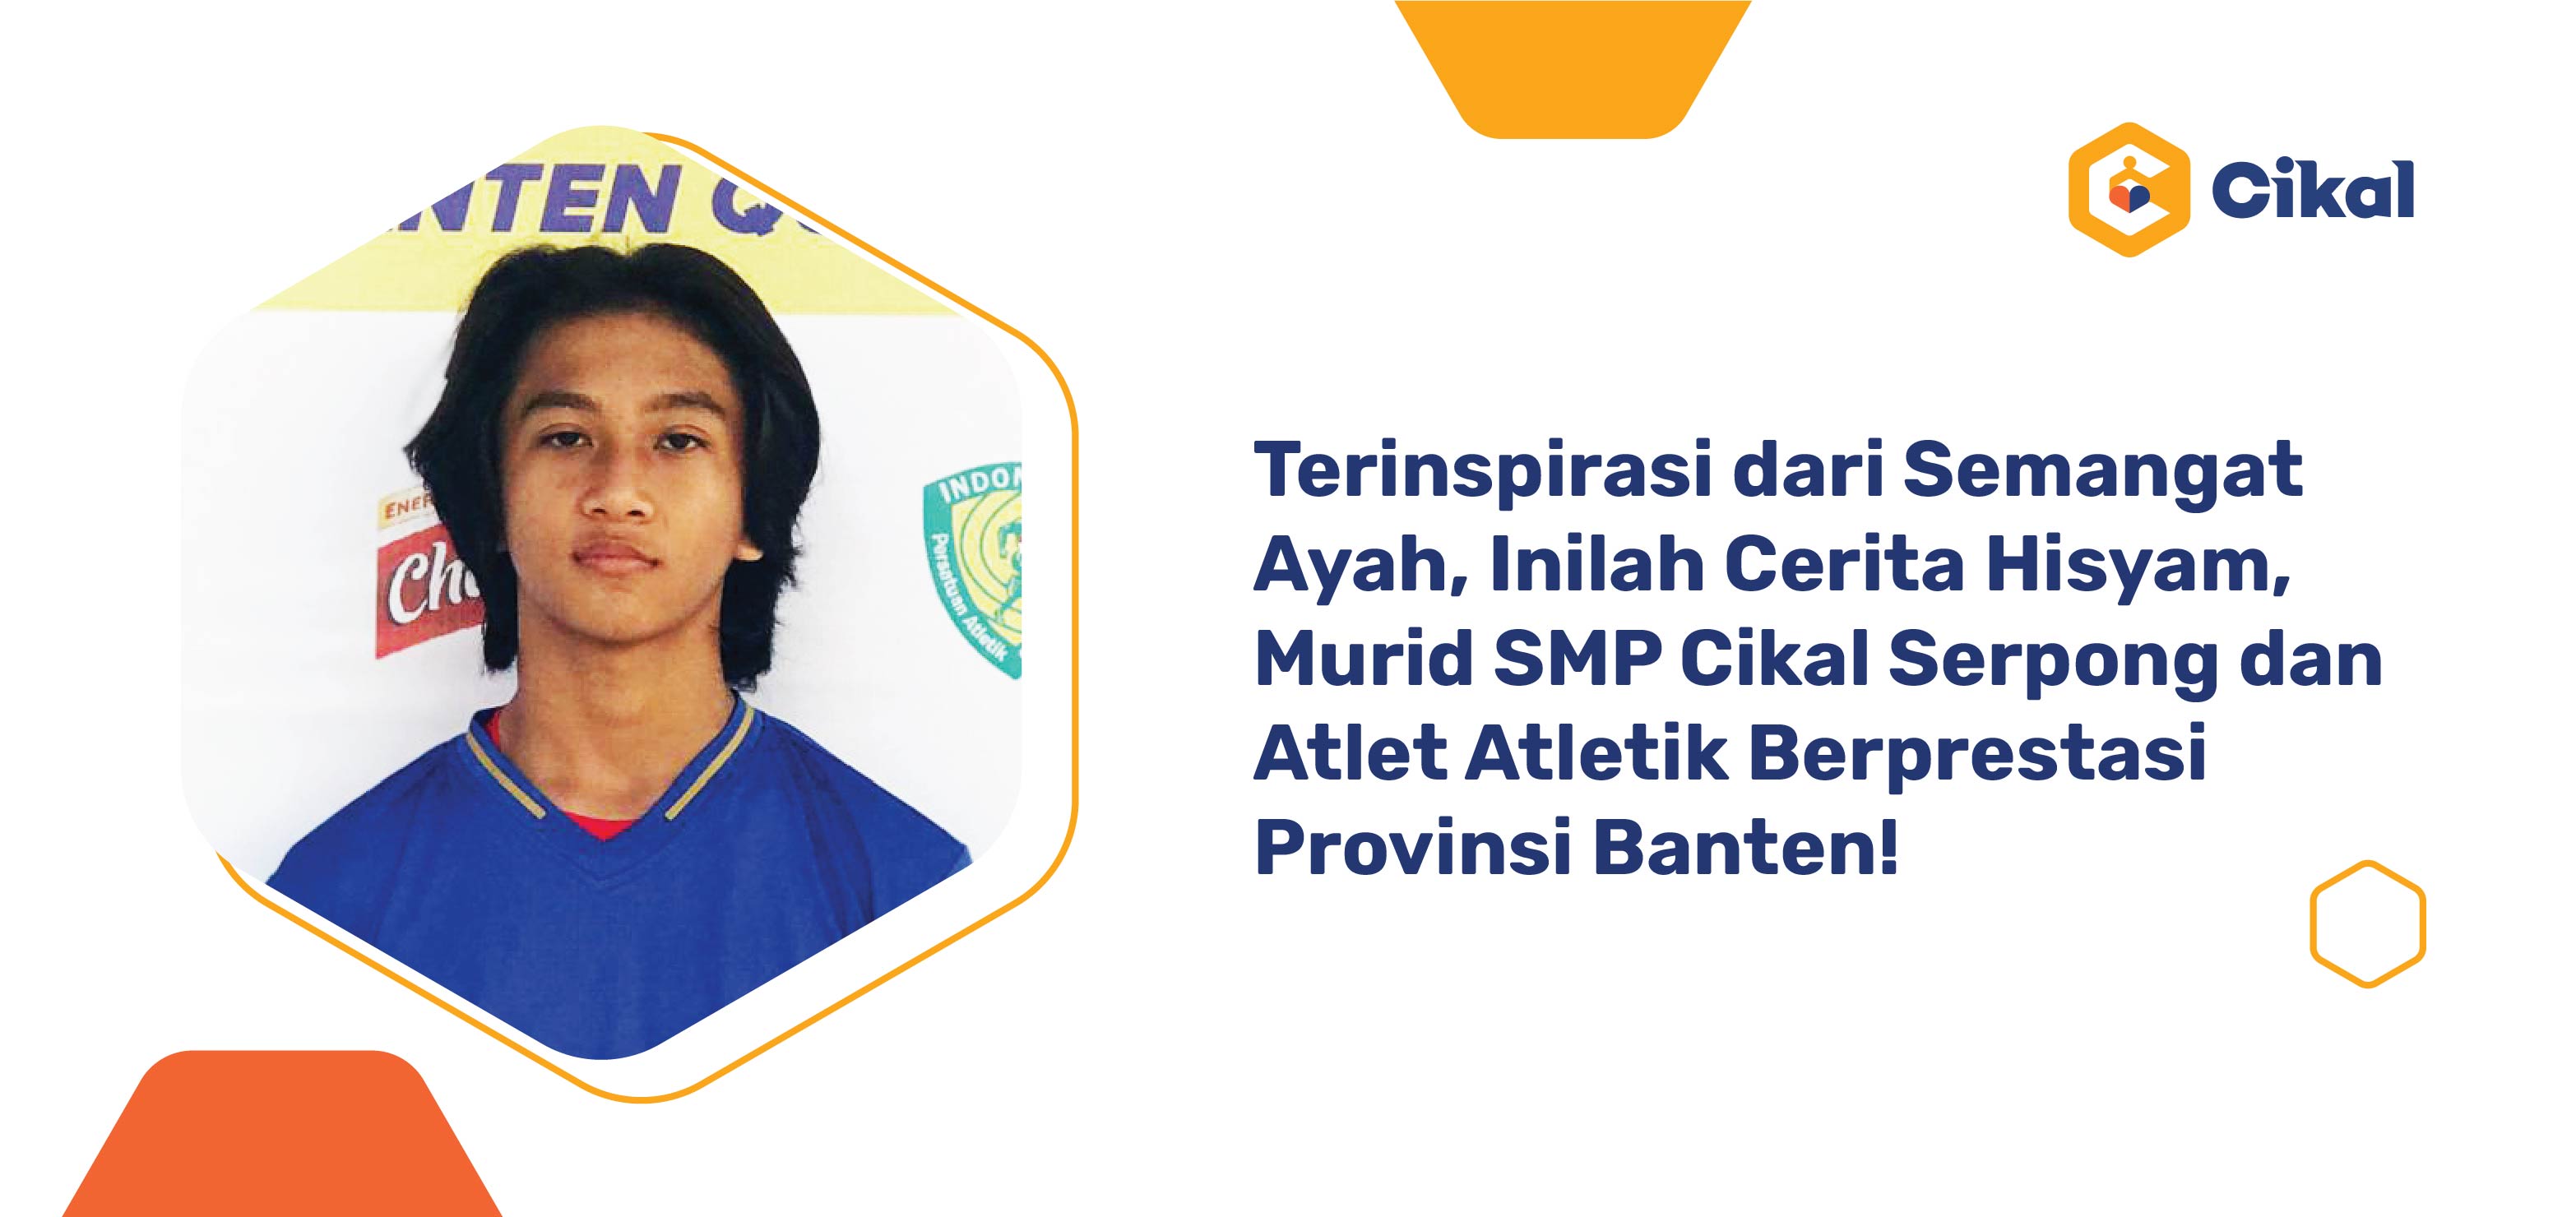 Terinspirasi dari Semangat Ayah, Inilah Cerita Hisyam, Murid SMP Cikal Serpong dan Atlet Atletik Berprestasi Provinsi Banten! 